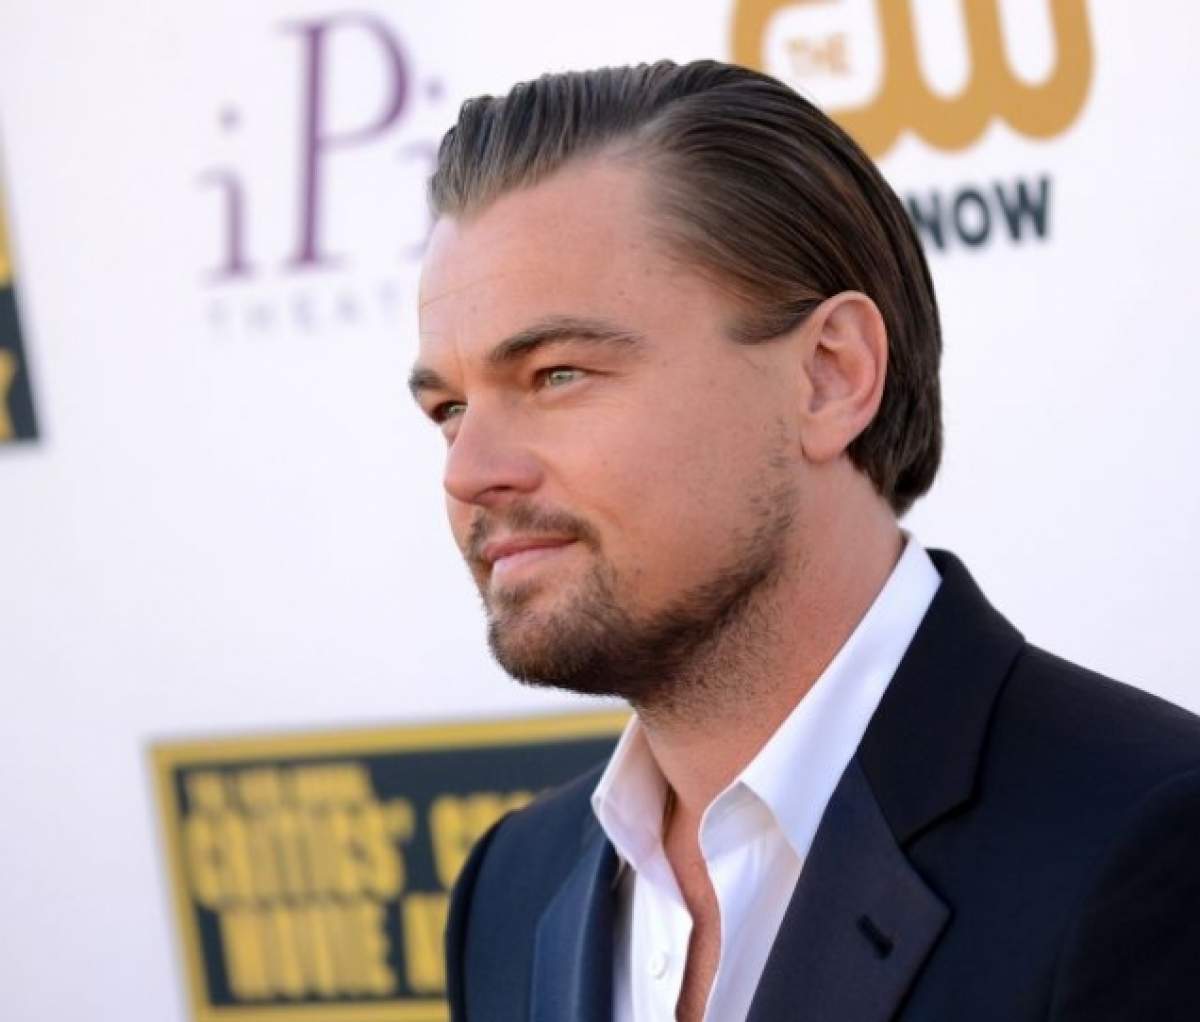 E greu să fii şi celebru! Un bărbat ce seamănă leit cu Leonardo DiCaprio a ajuns ţinta glumelor pe internet